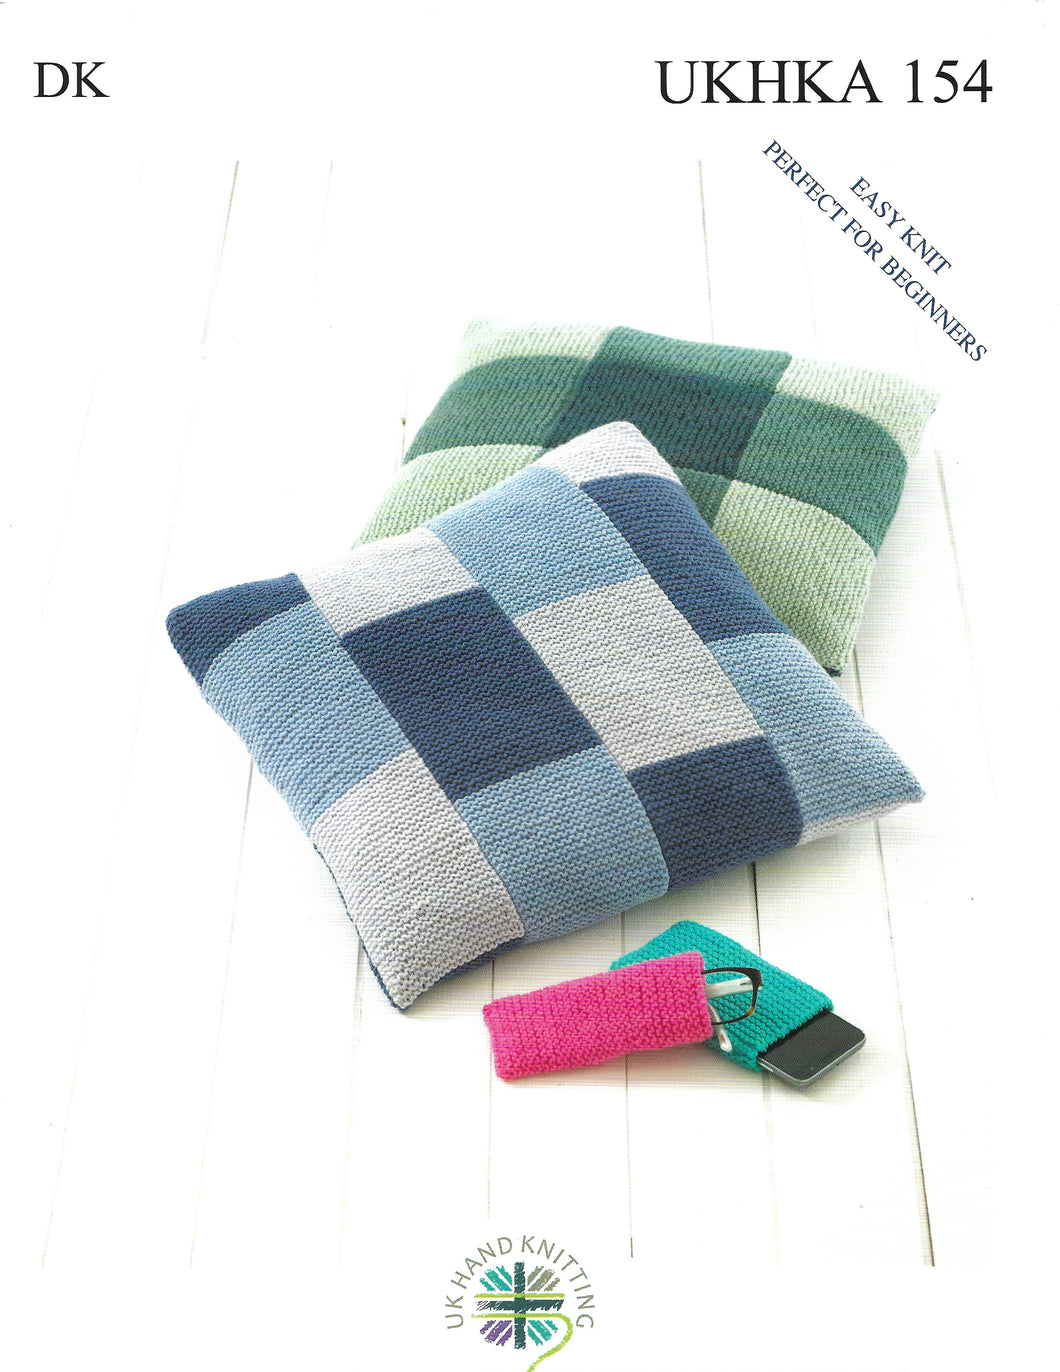 Knitting Pattern Leaflet UKHKA 154 Baby DK Easy Knit Cushions